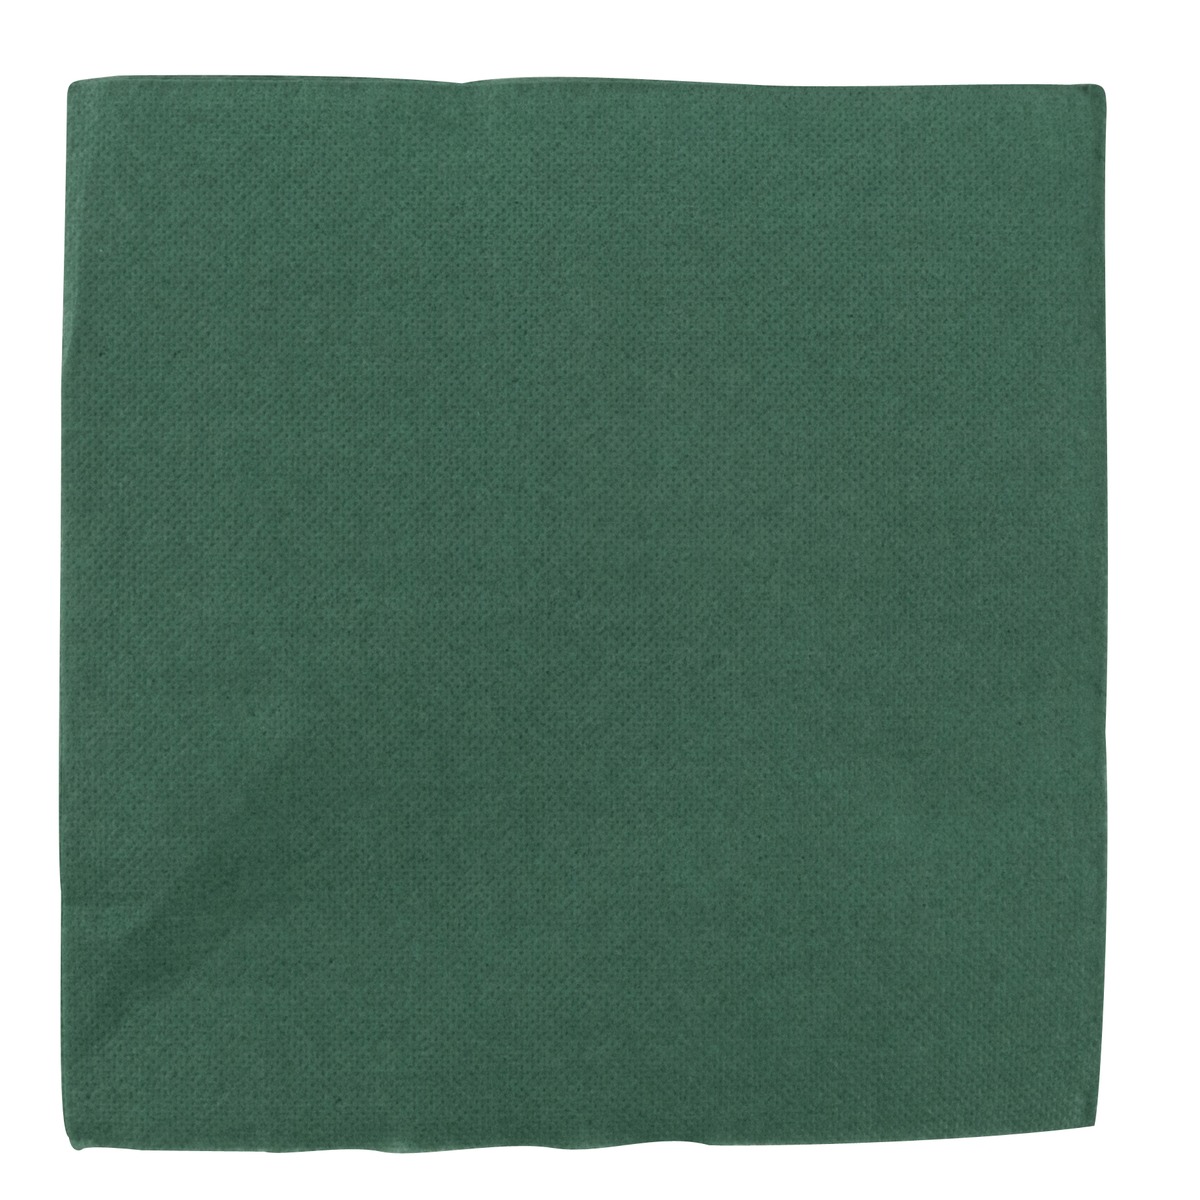 Lot de 40 serviettes en papier - 38 x 38 cm - Vert sapin